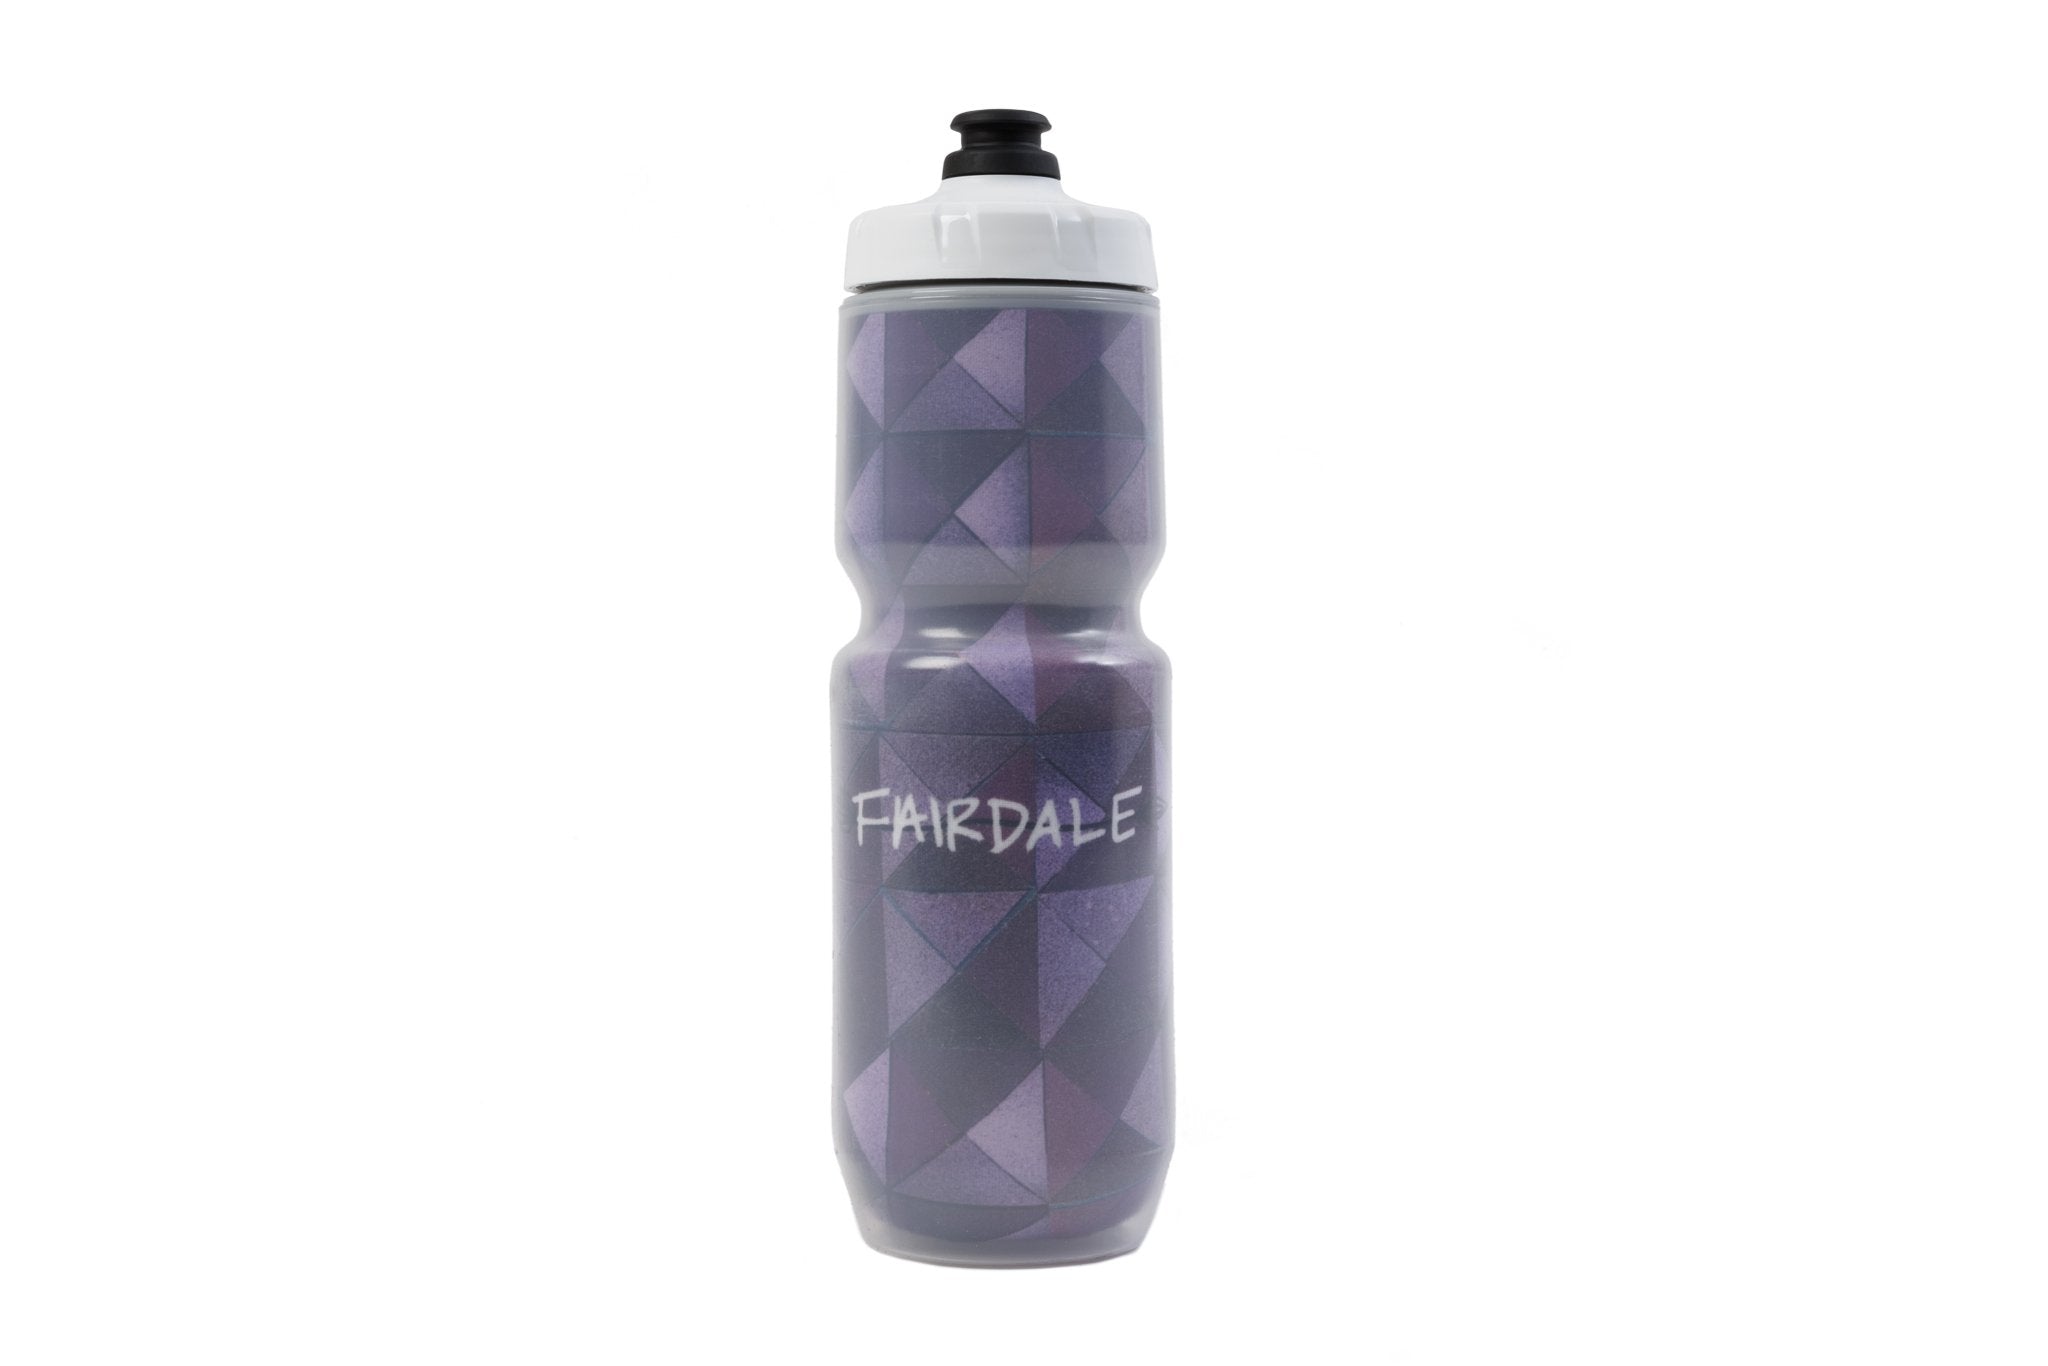 Daydreamer Pastel Purple Slim Water Bottle